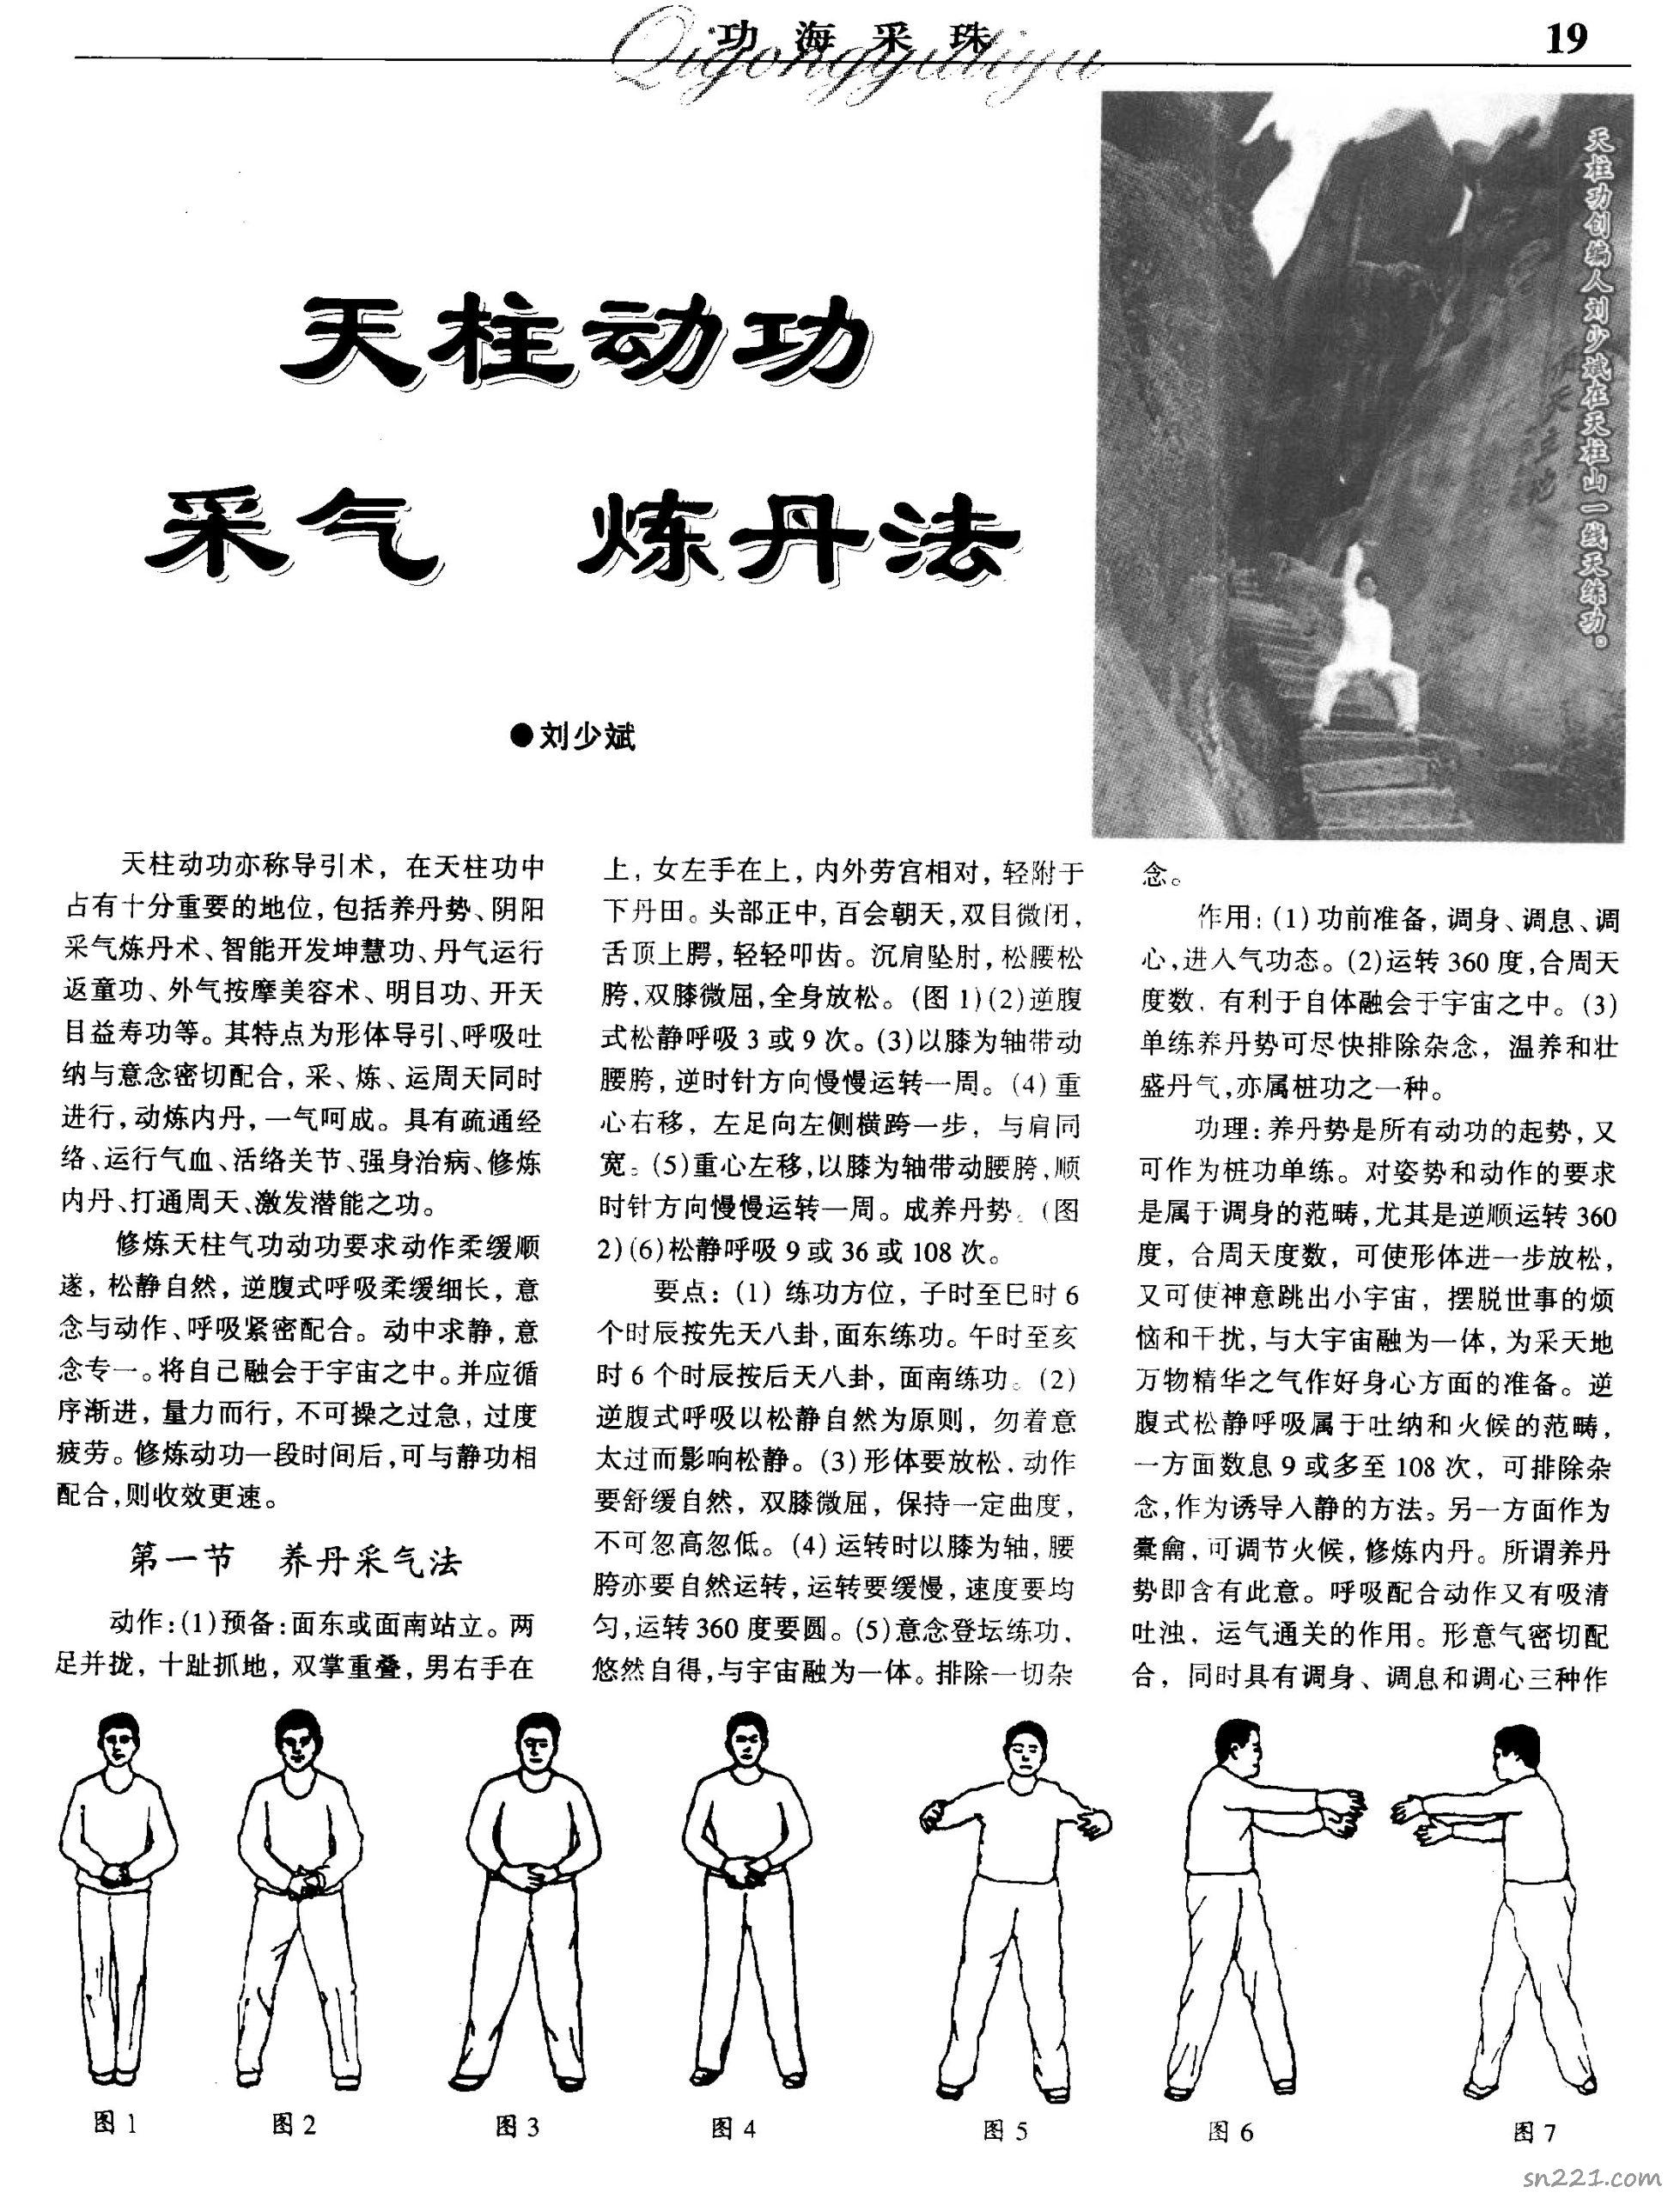 劉少斌-天柱動功采氣煉丹法6頁.pdf